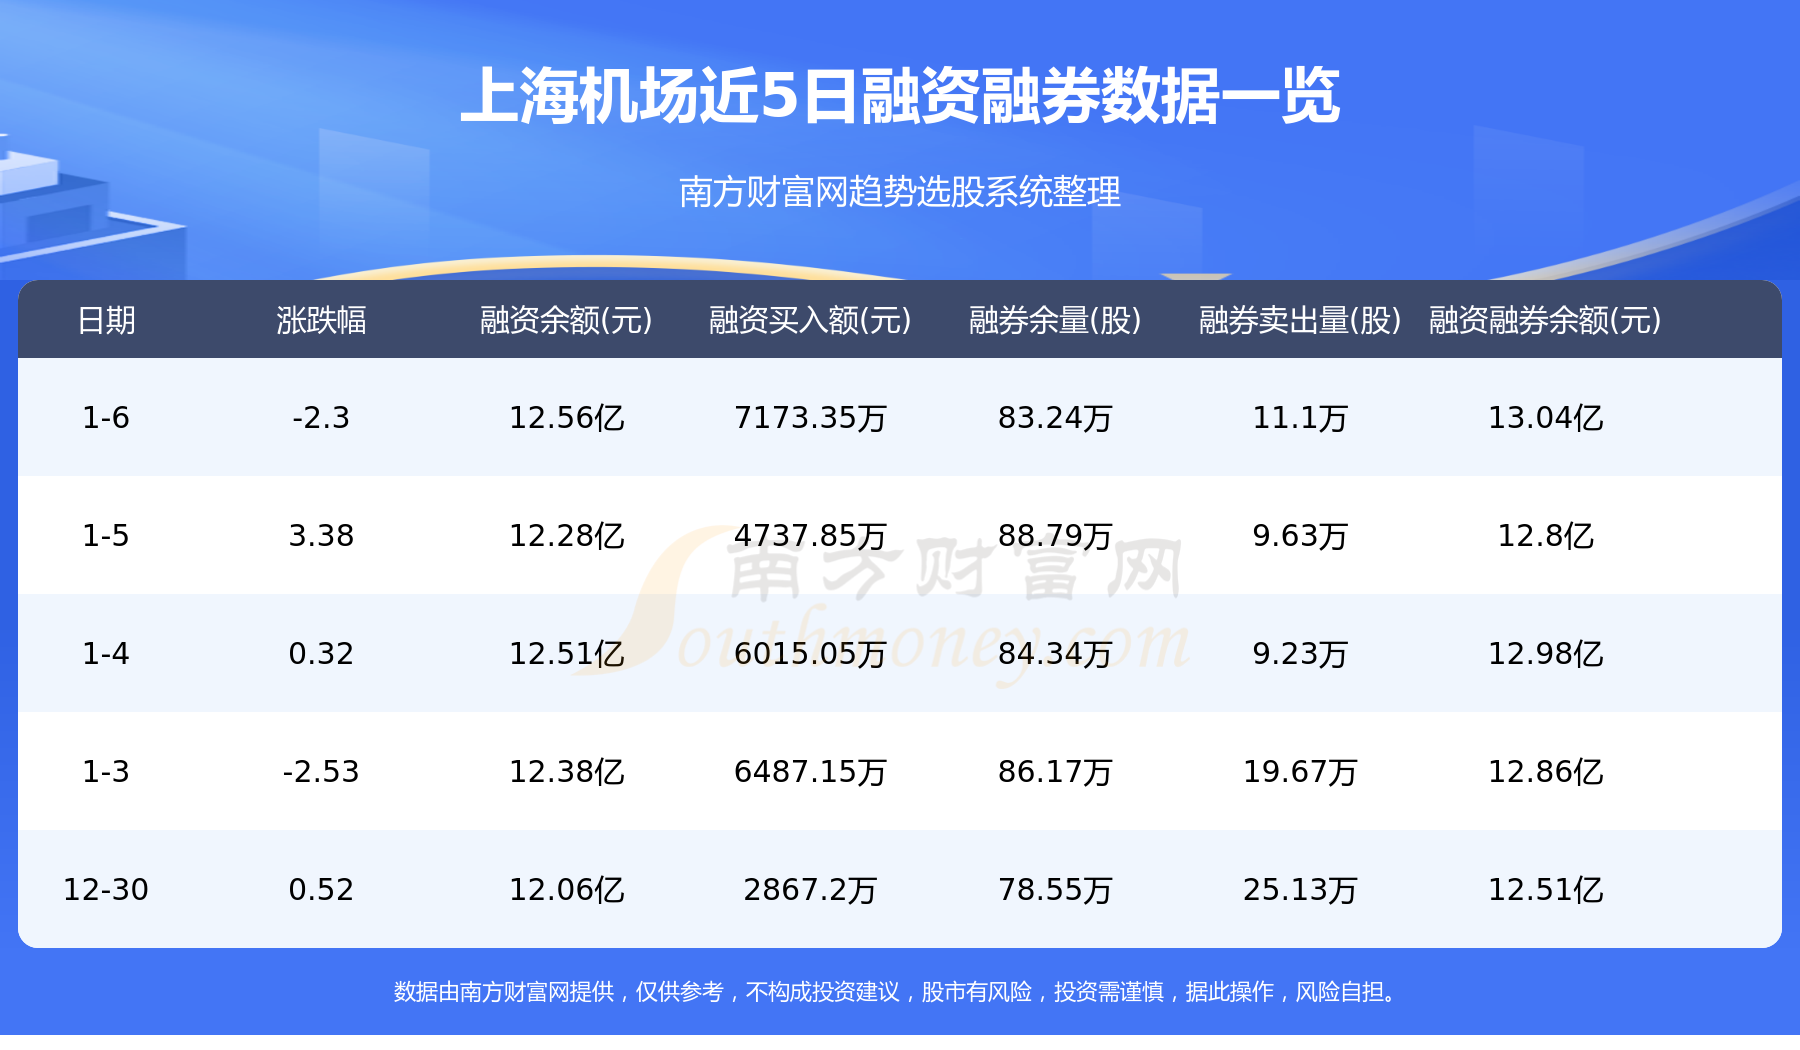 【1月10日资金流向】上海机场资金流向一览表